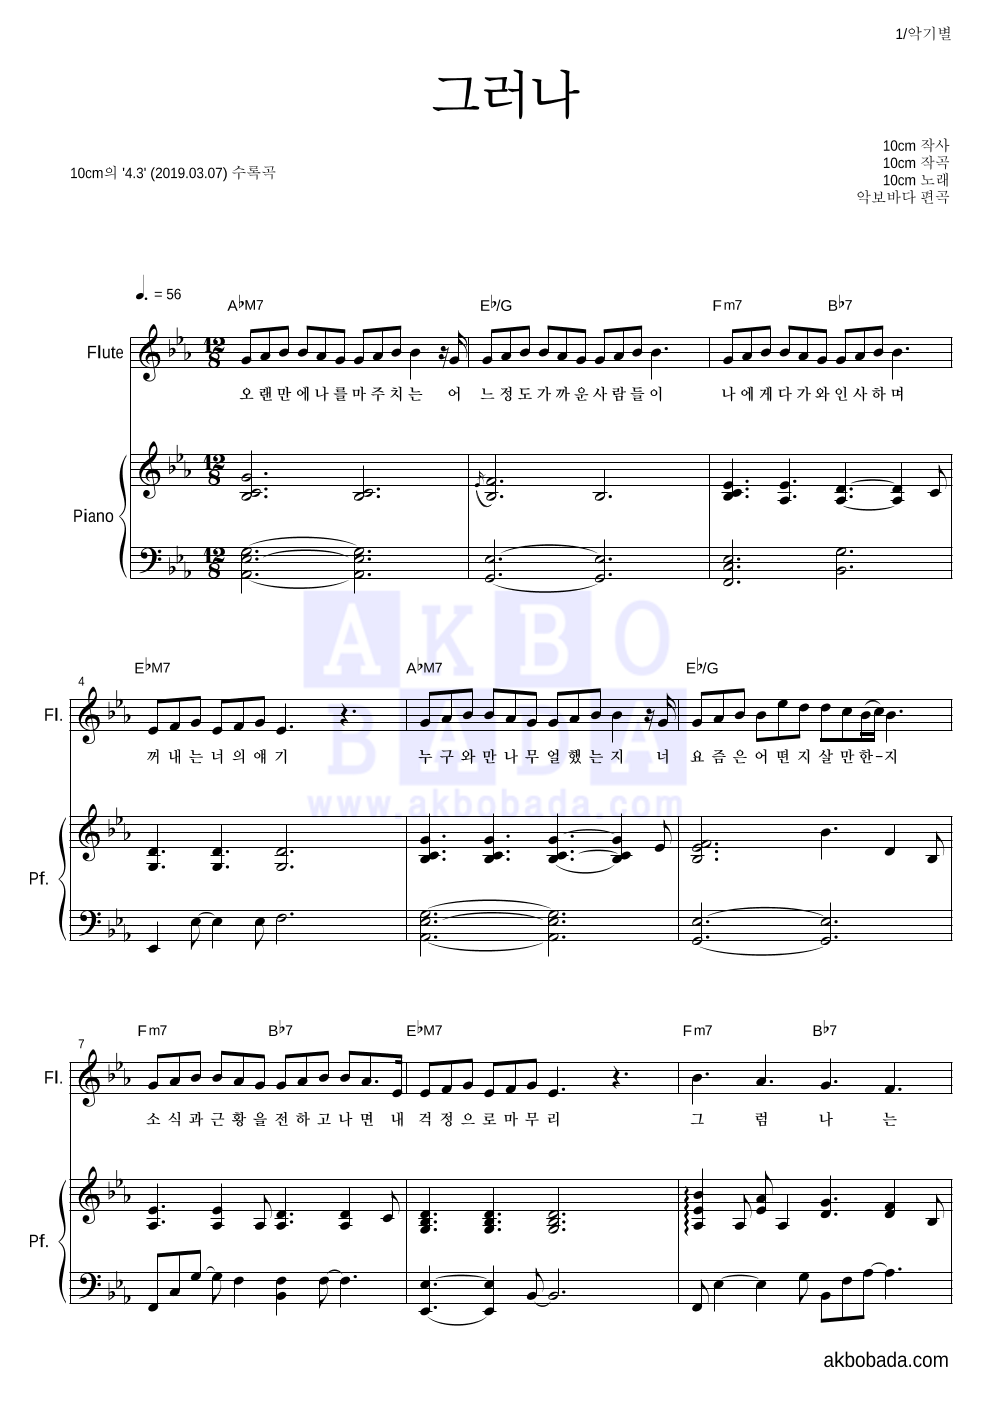 10CM - 그러나 플룻&피아노 악보 